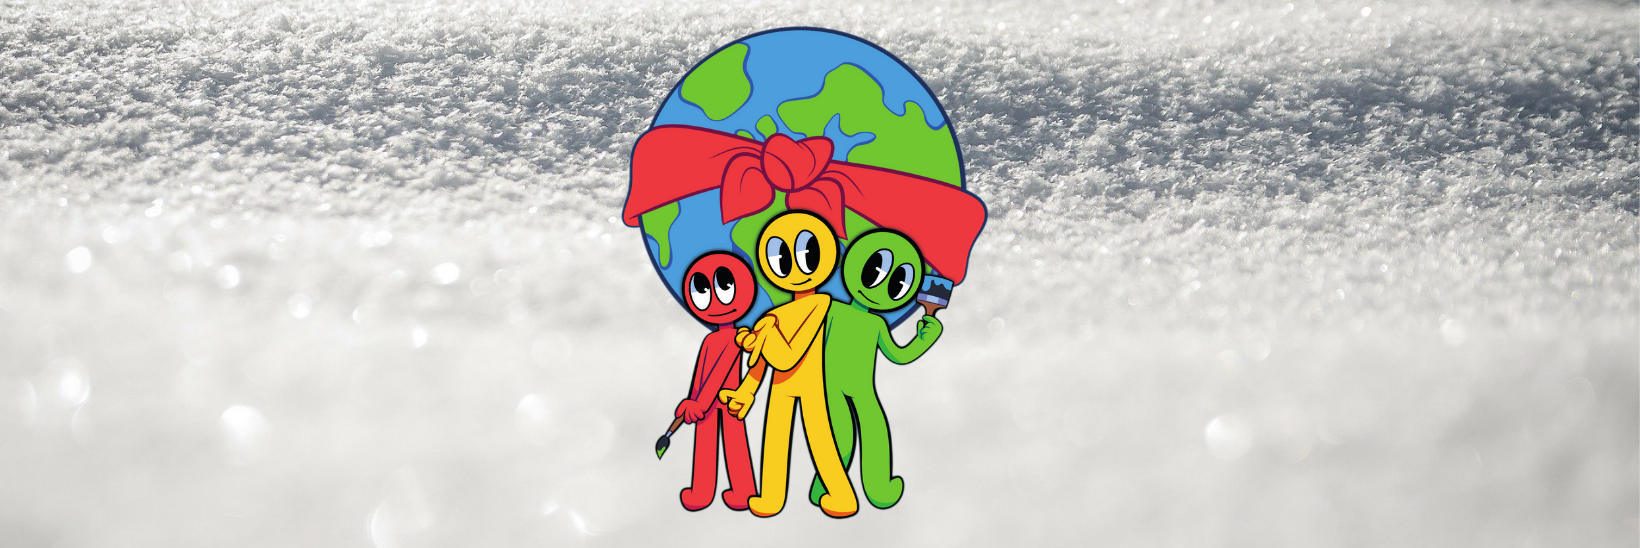 Piirretty punainen, keltainen ja vihreä hahmo seisovat piirretyn maapallon edessä. Taustalla on luminen maisema.